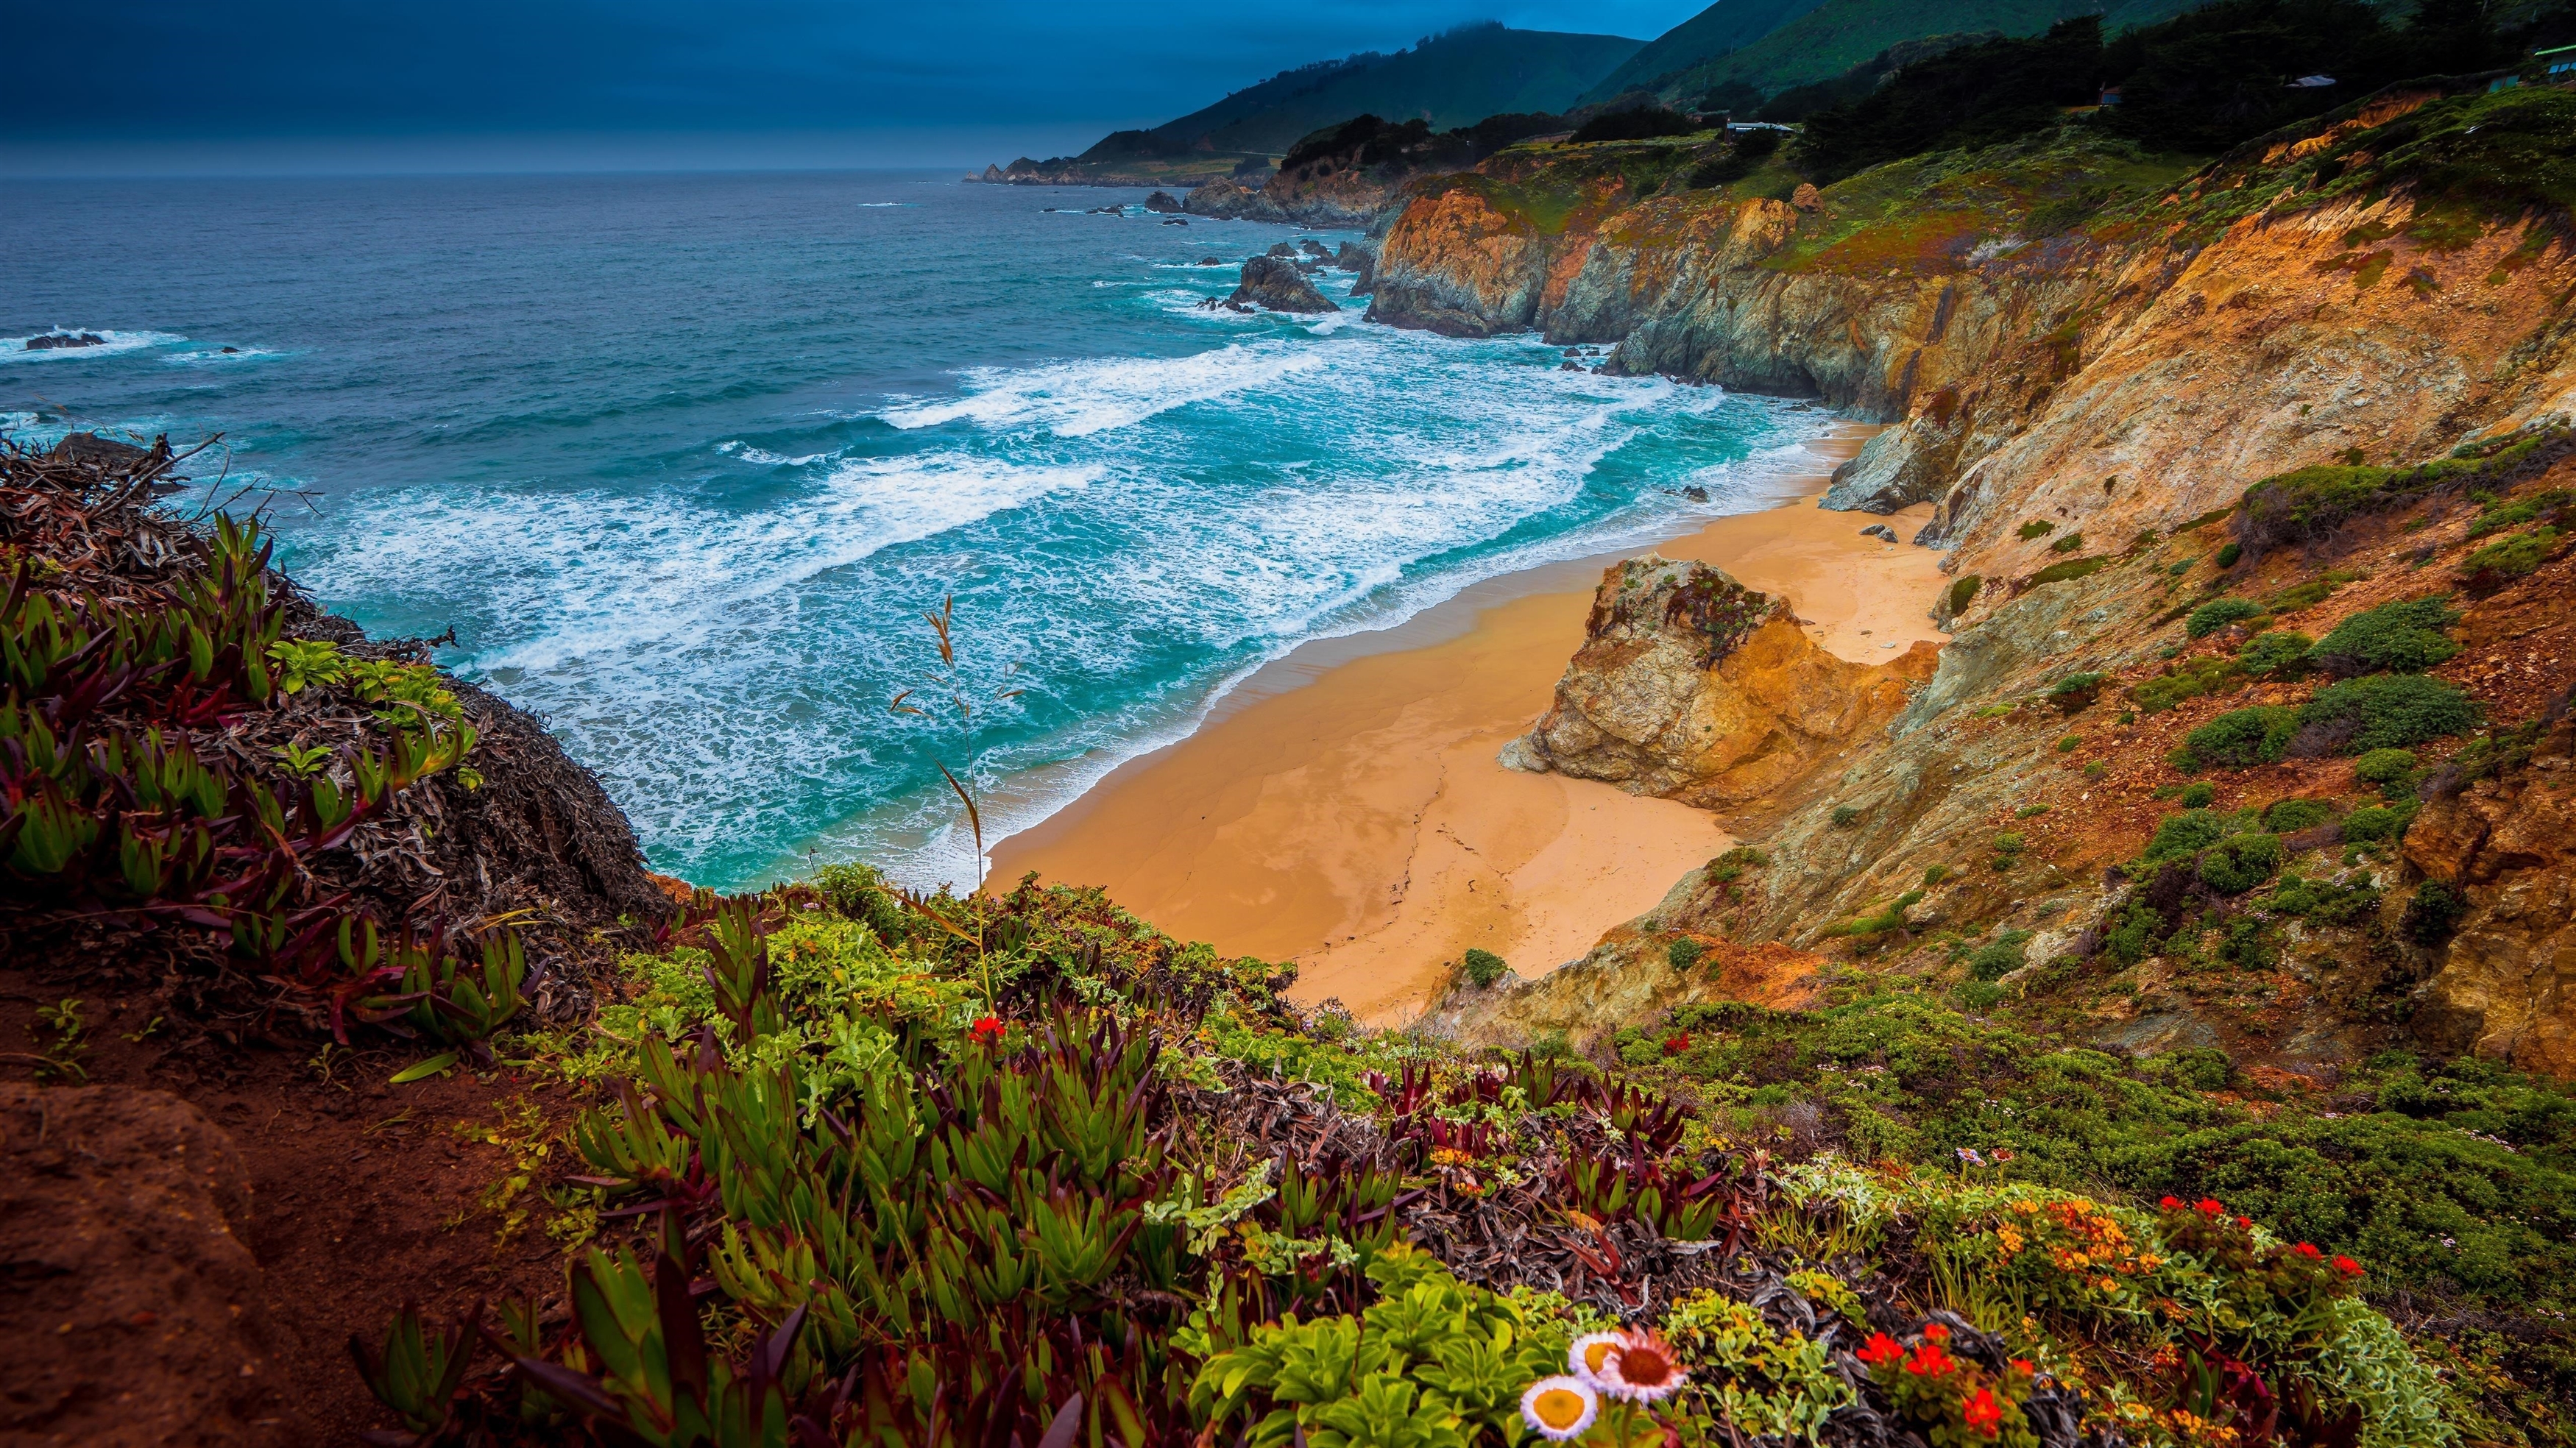 Джулия Пфайффер Бернс государственный парк калифорнийское побережье с цветами природа обои скачать